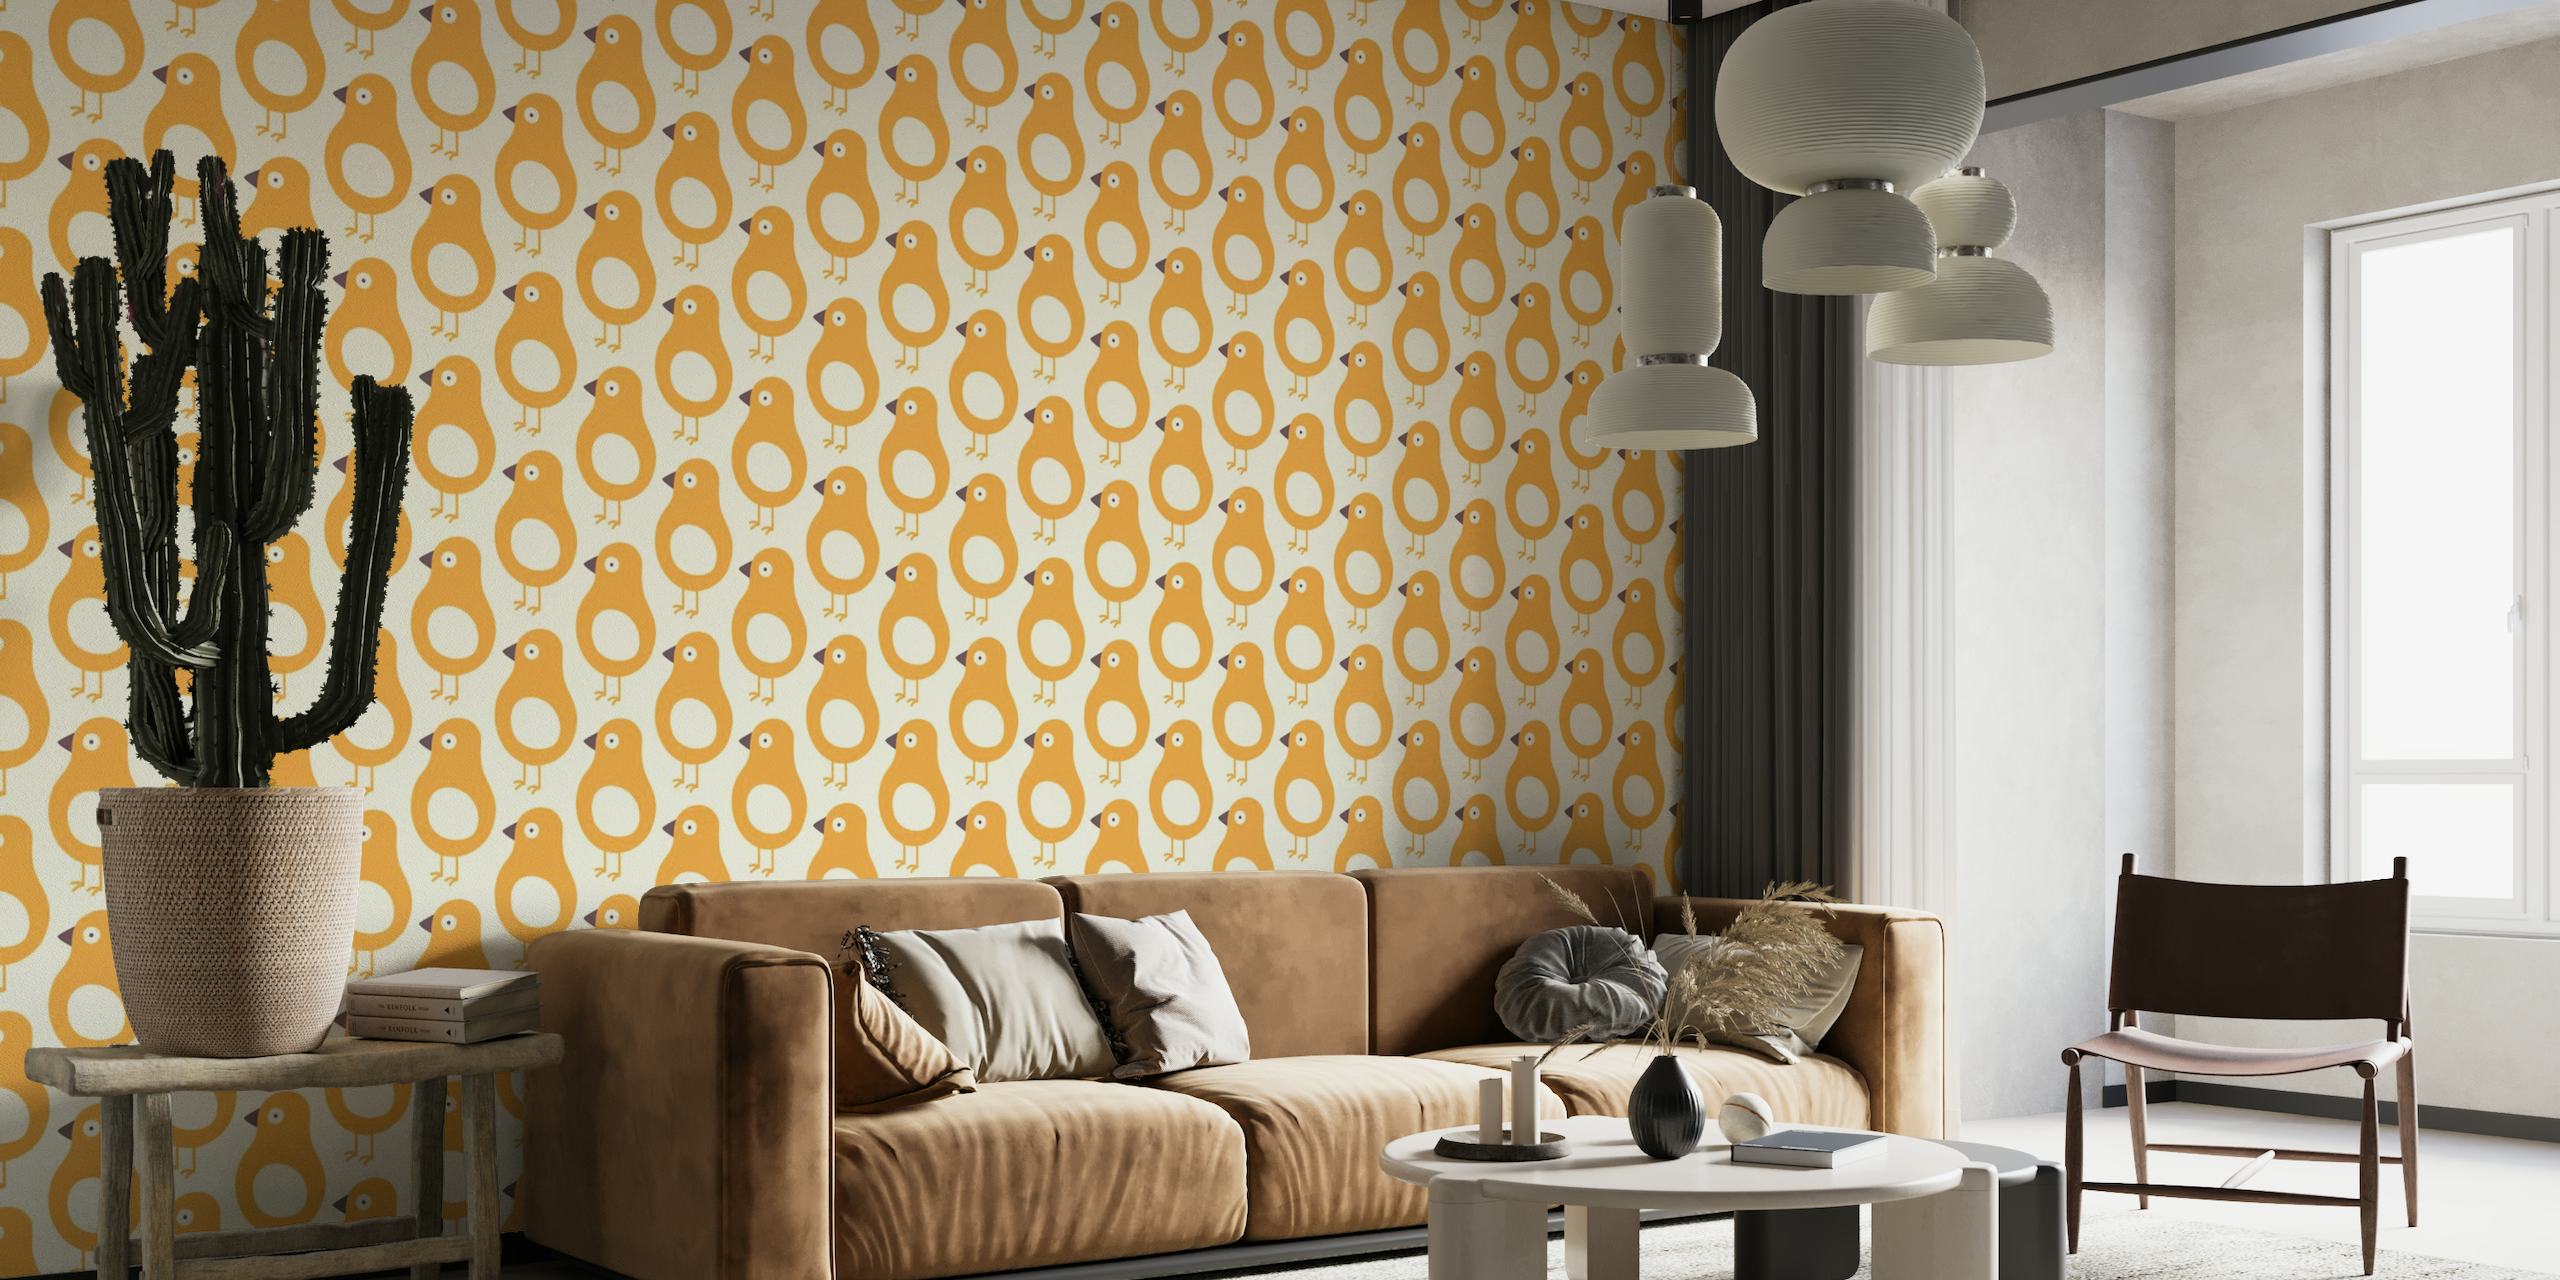 2553 - playful birds pattern wallpaper